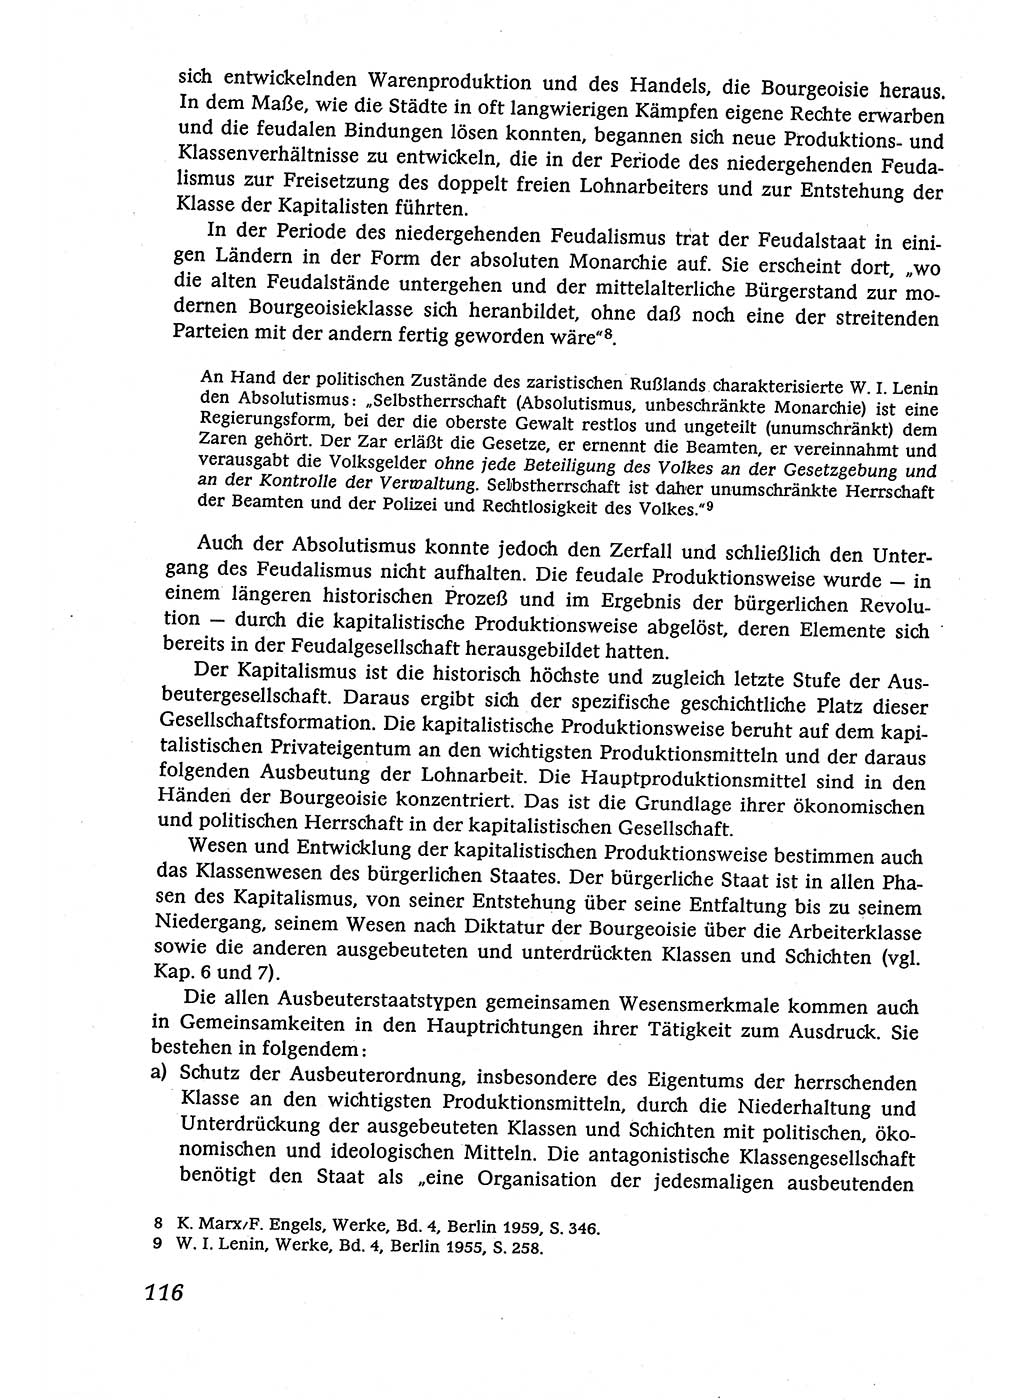 Marxistisch-leninistische (ML) Staats- und Rechtstheorie [Deutsche Demokratische Republik (DDR)], Lehrbuch 1980, Seite 116 (ML St.-R.-Th. DDR Lb. 1980, S. 116)